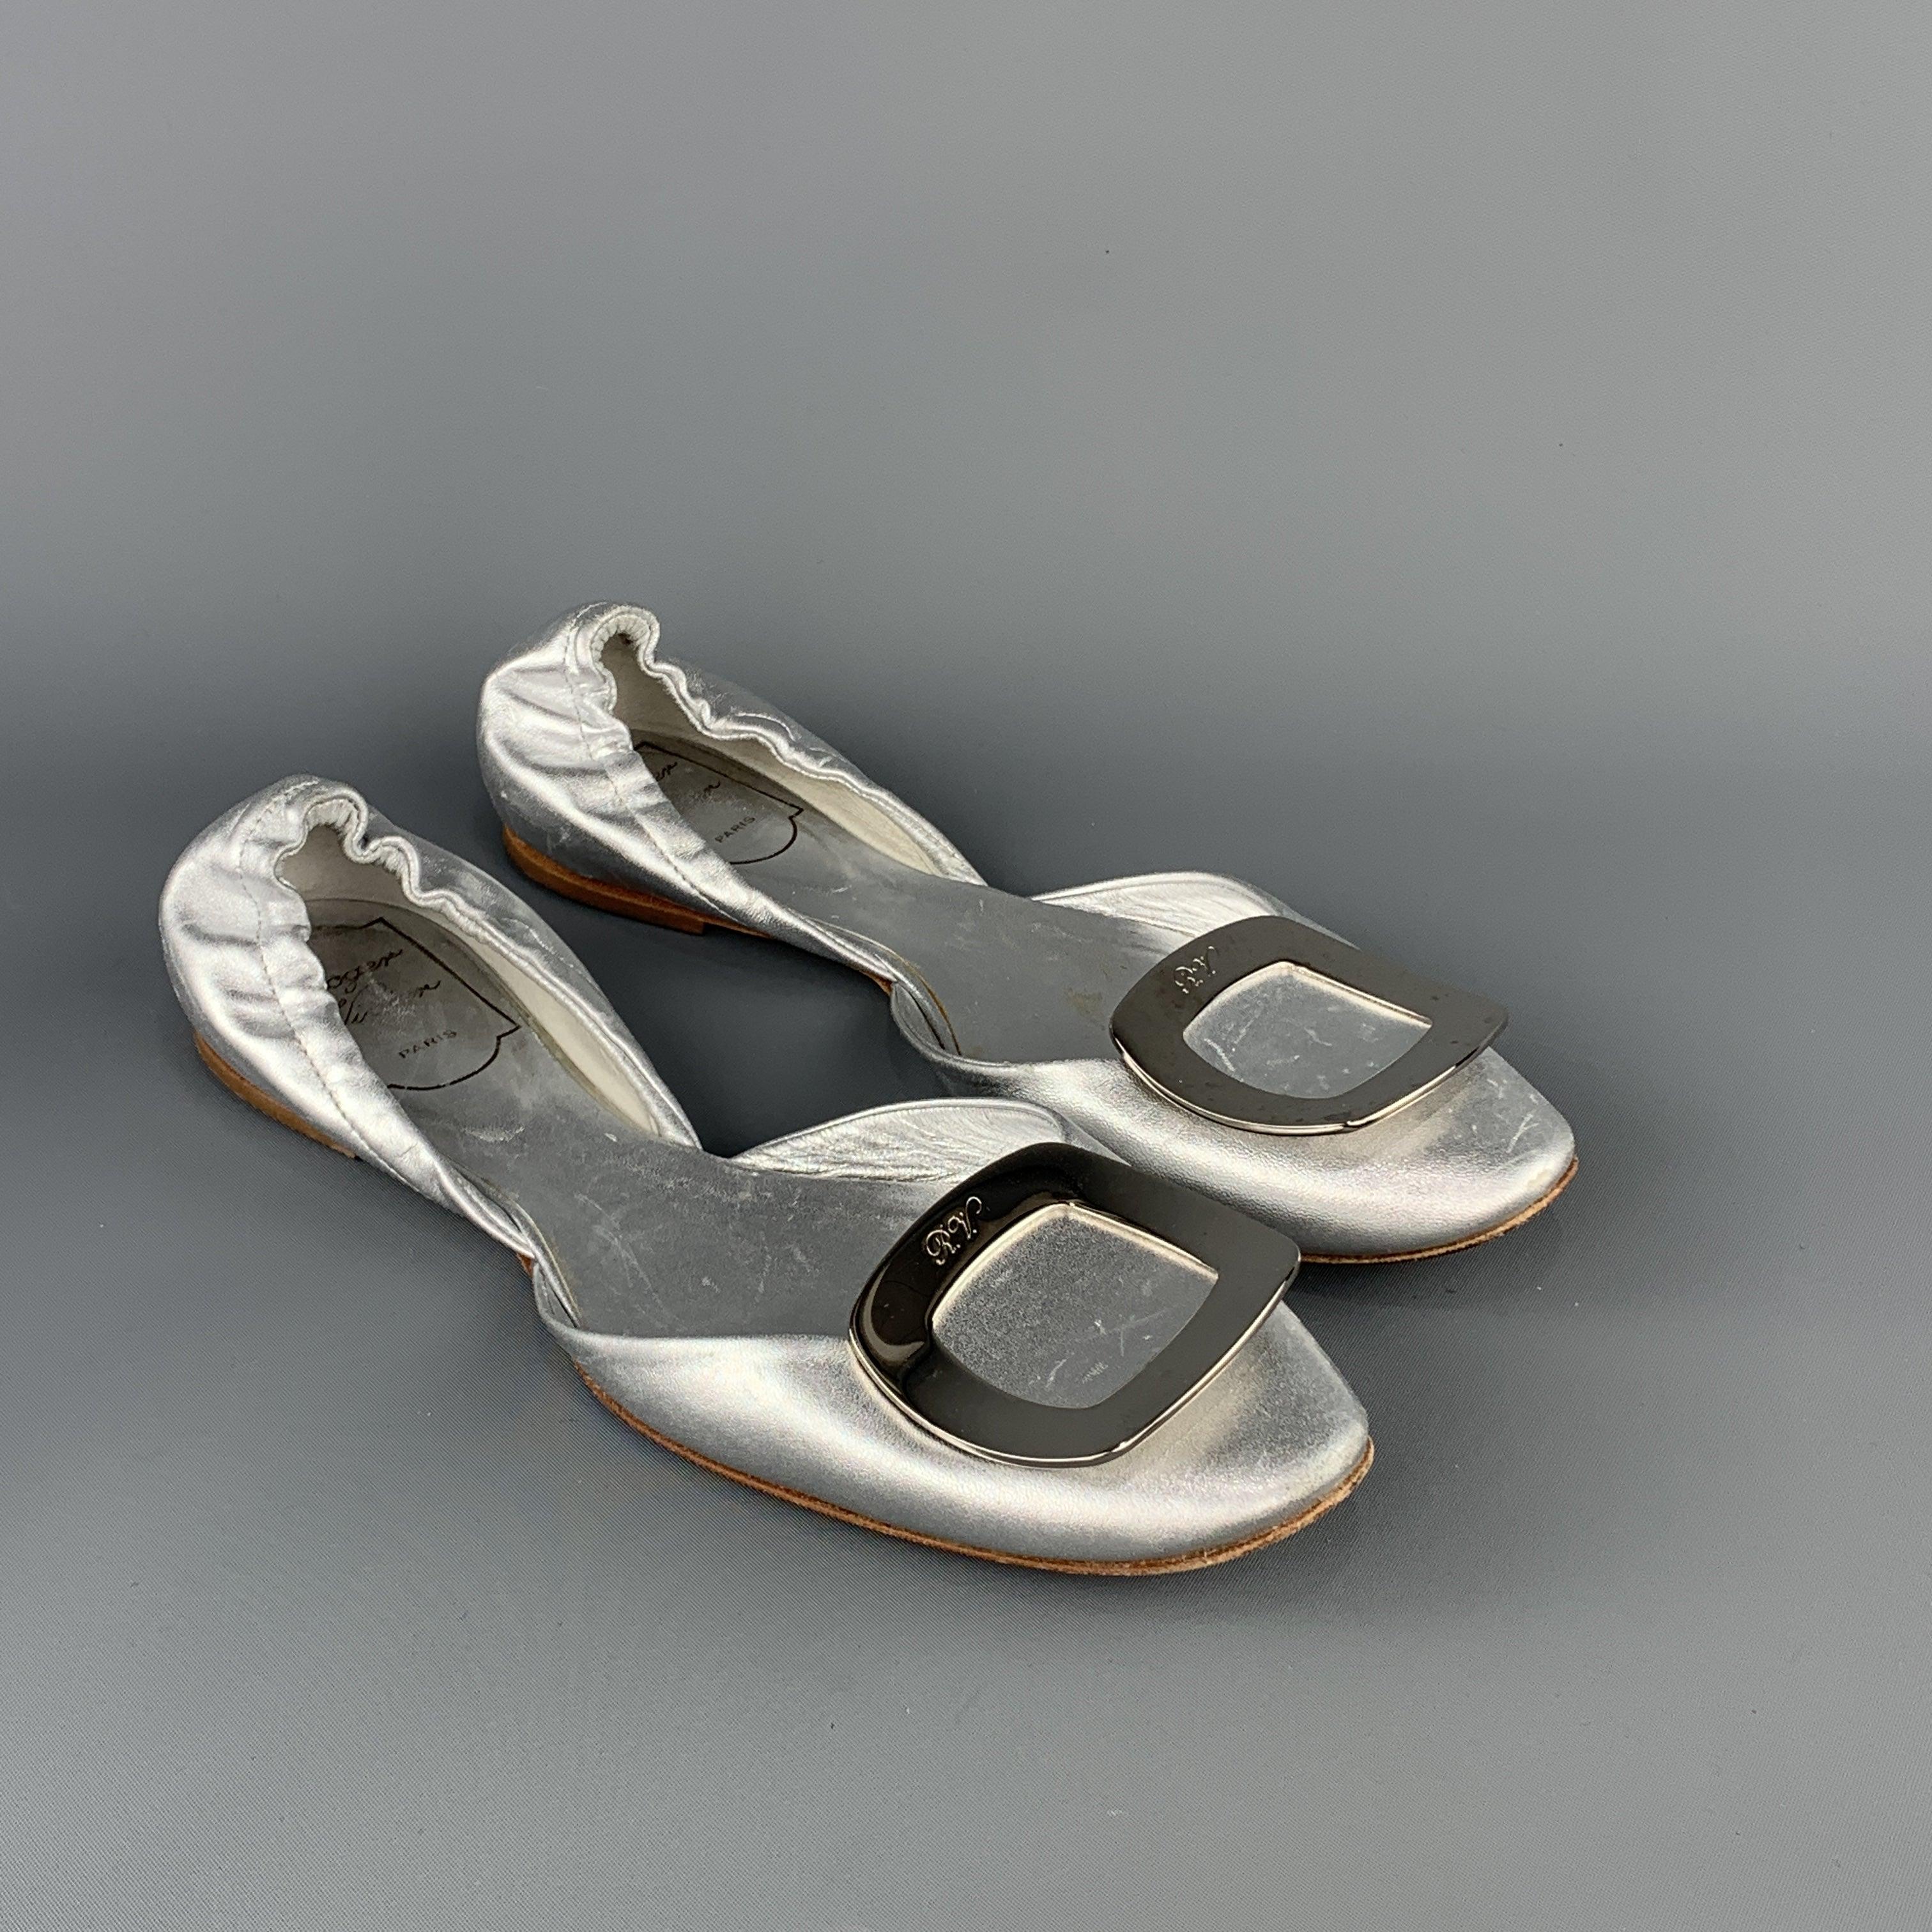 Les chaussures D'orsay ROGER VIVIER sont en cuir argenté métallisé et dotées d'une boucle en métal surélevée. Fabriquées en Italie.
Bon état d'origine.
 

Marqué :   IT 36 1/2

  
  
  
 
Référence : 94126
Catégorie : Appartements
Plus de détails
  